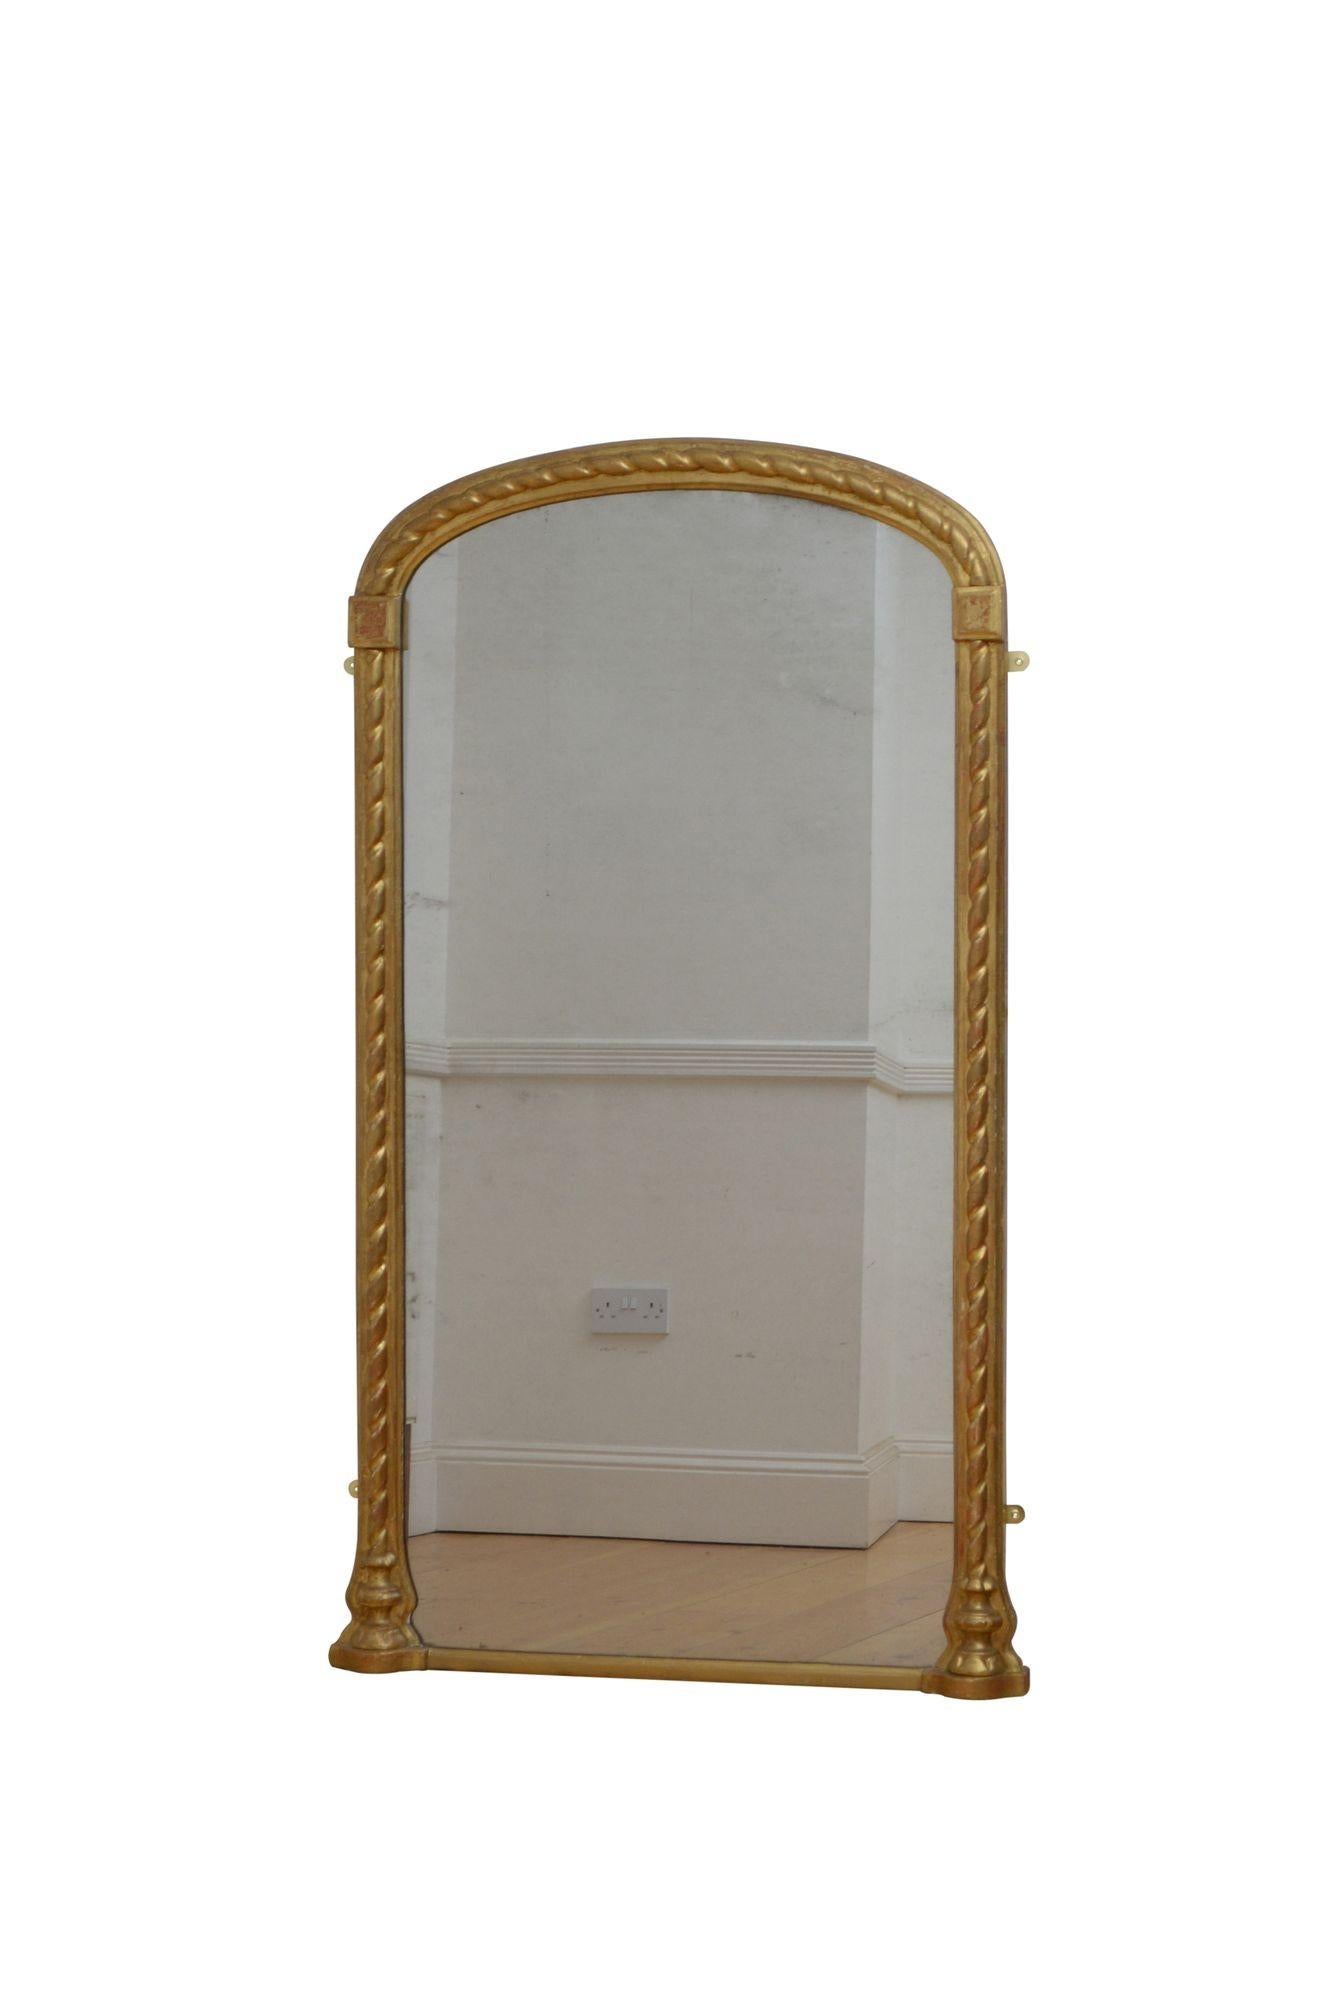 K0606  Un bon miroir mural du 19ème siècle, avec des vitres d'origine avec quelques rousseurs, dans un cadre arqué avec un bord mouluré et une décoration sculptée en corde. Ce miroir de table console antique conserve son verre d'origine, quelques